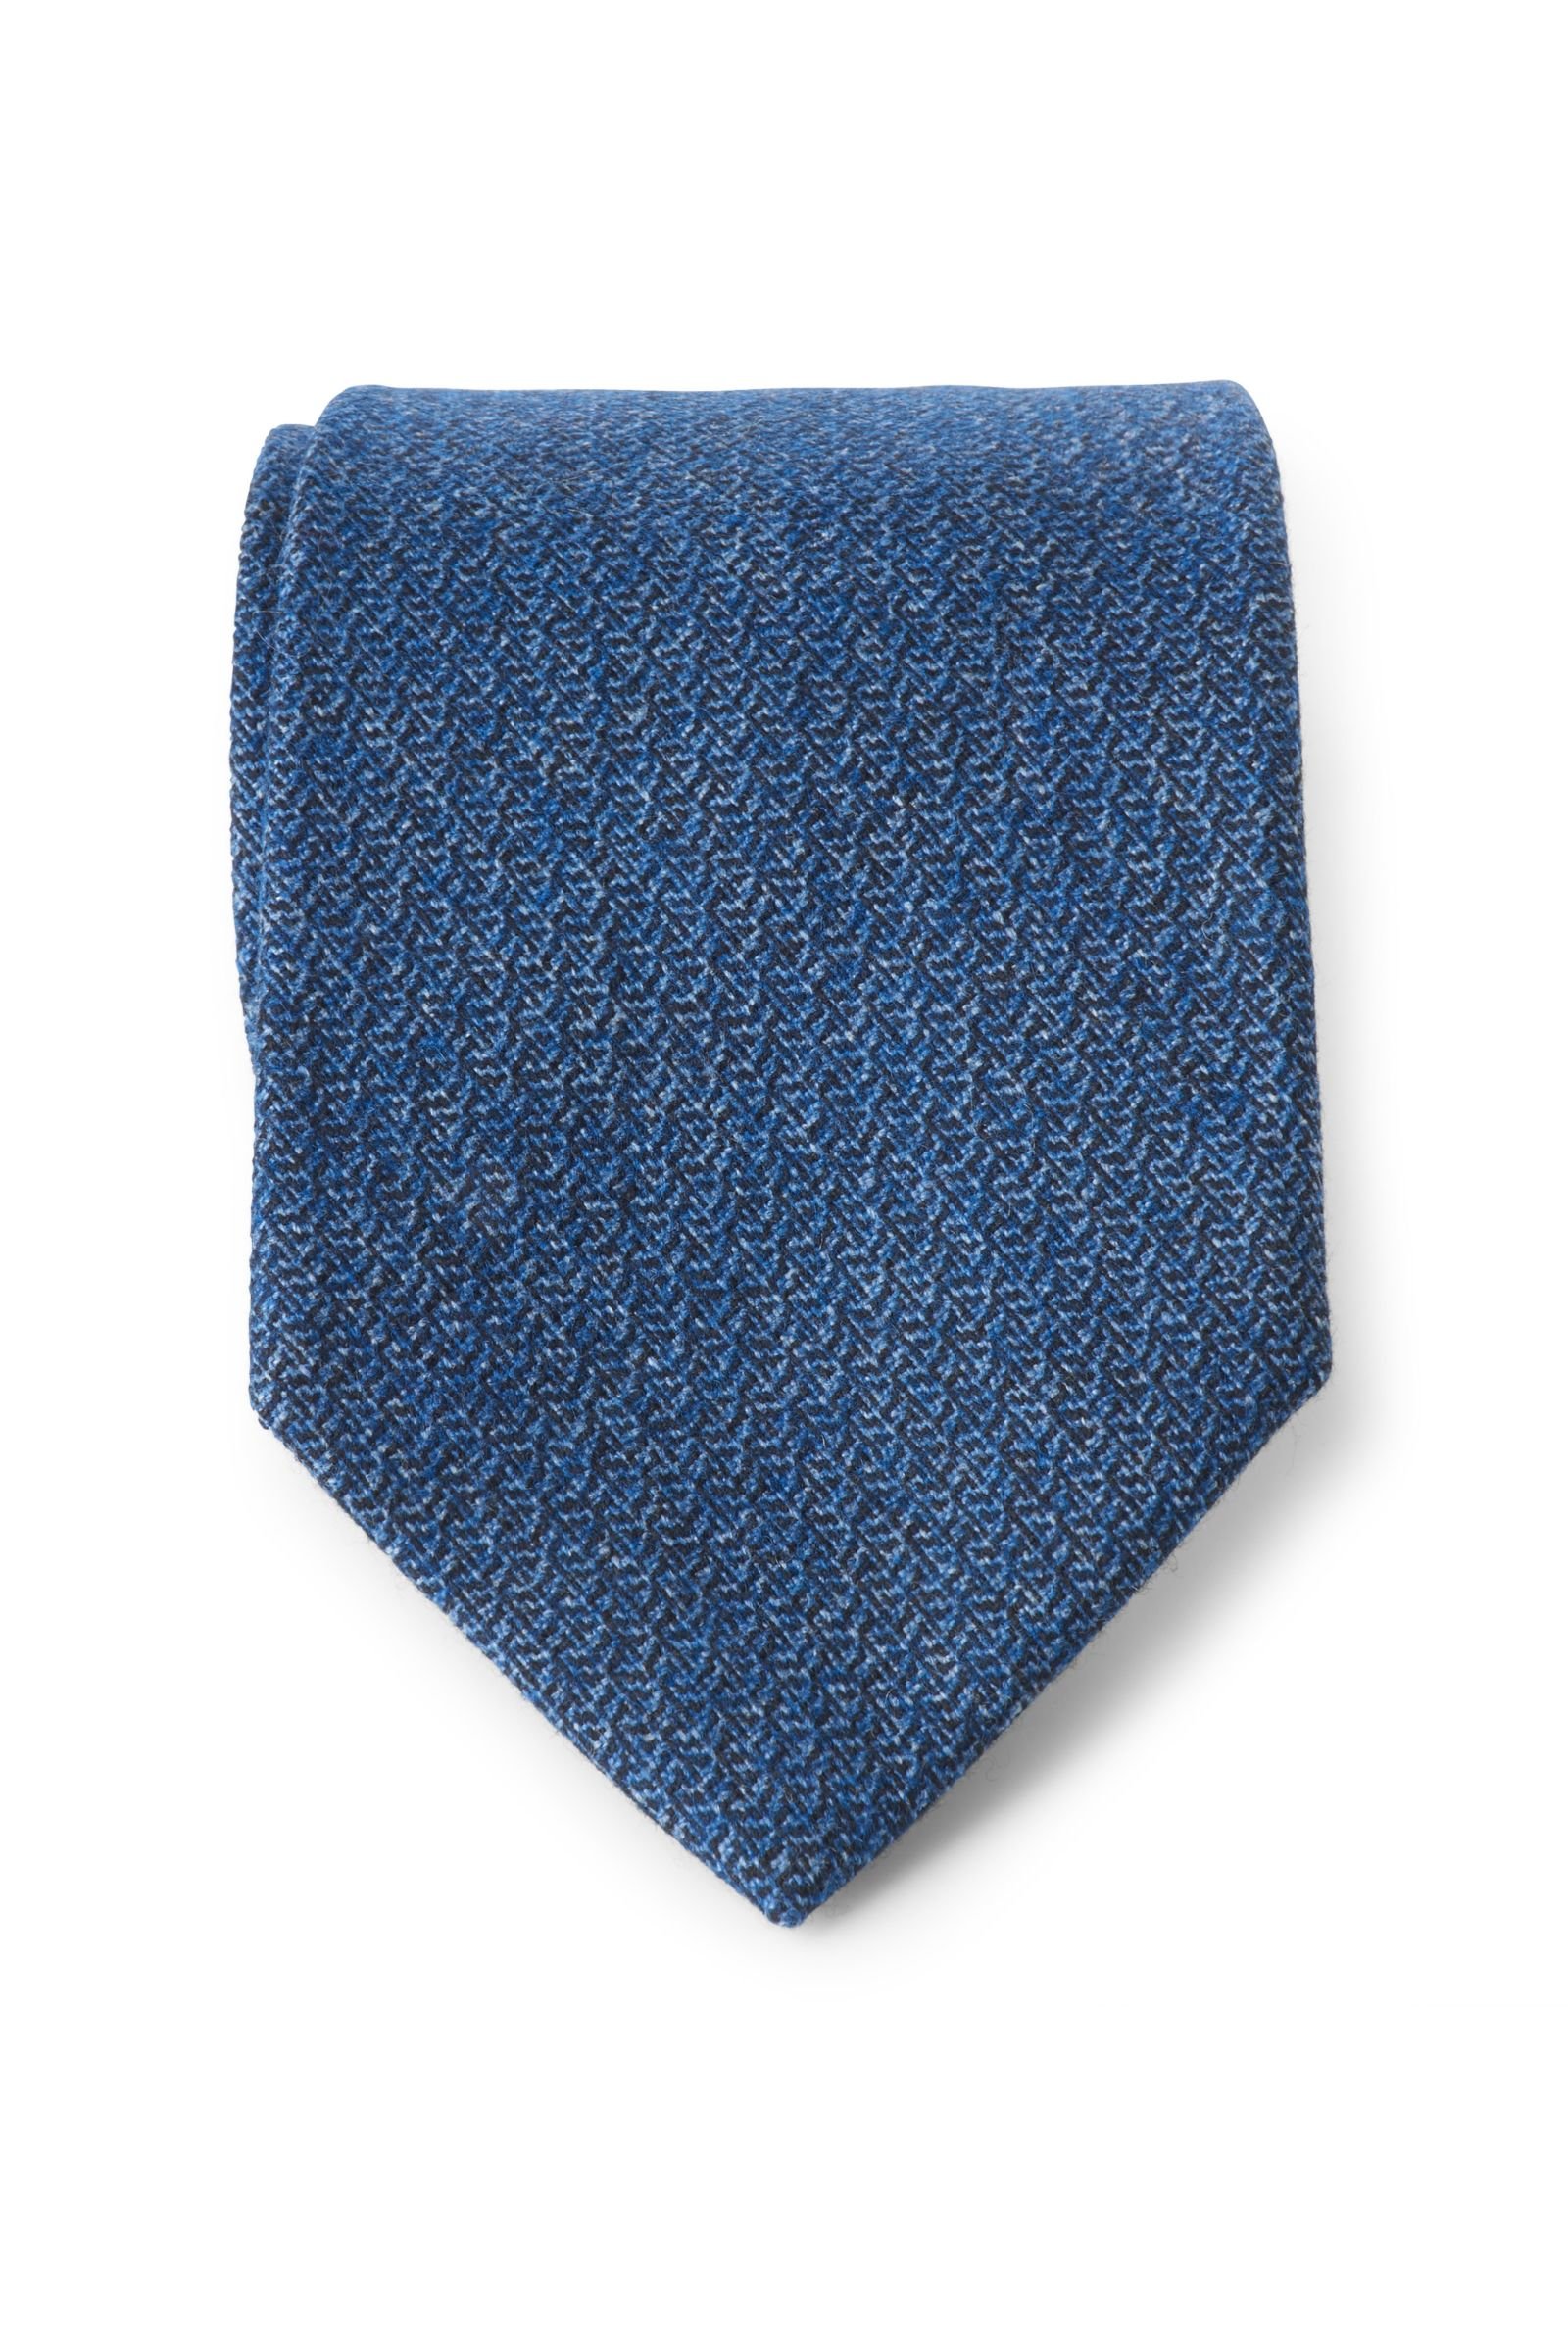 Krawatte rauchblau gemustert